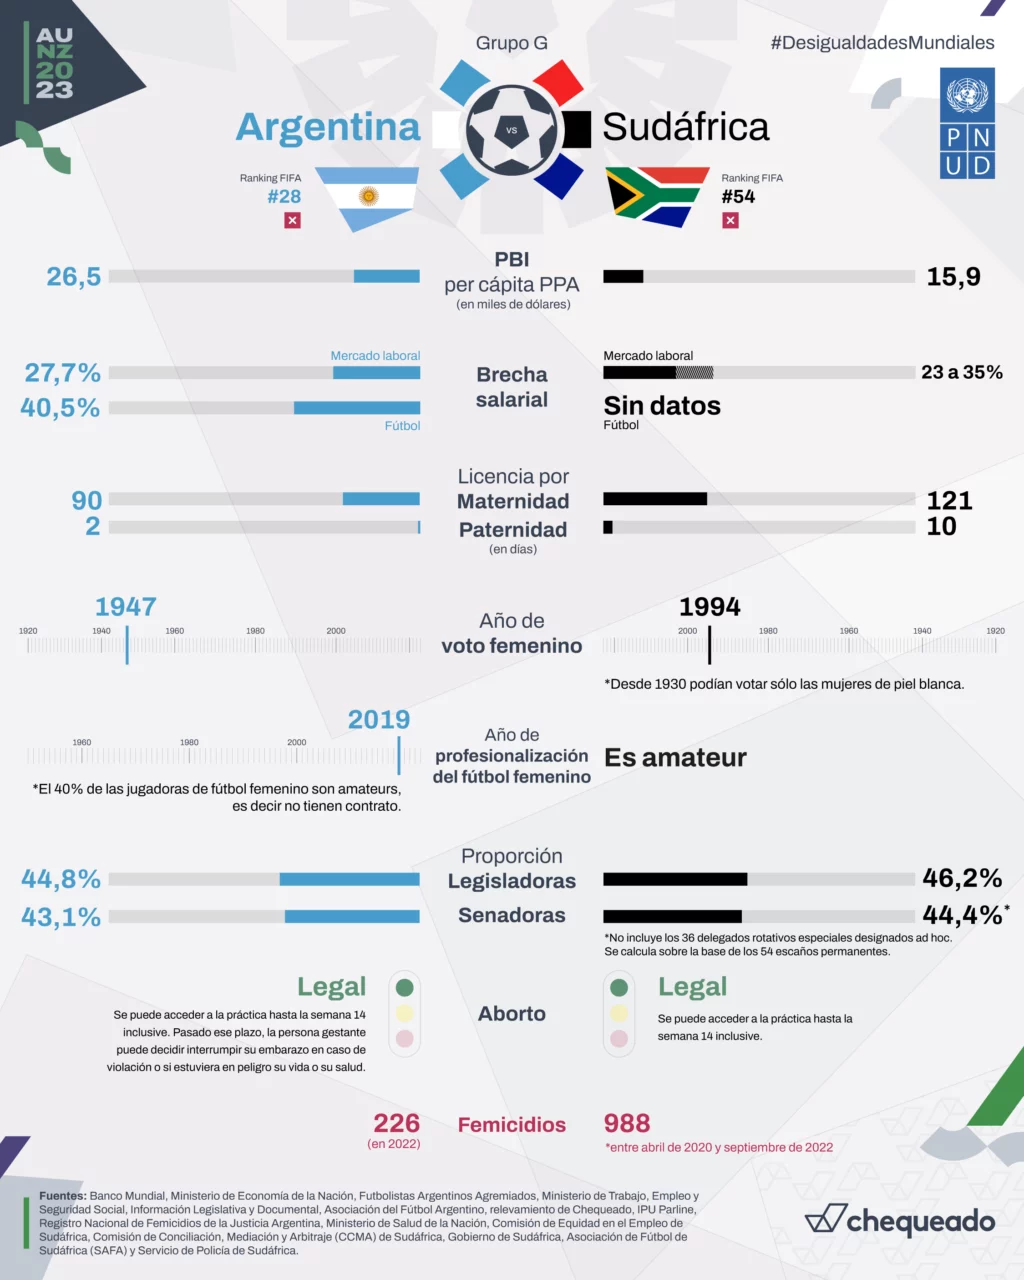 Mundial de fútbol femenino: ¿quién gana si comparamos a Argentina y Sudáfrica en economía, política y género?